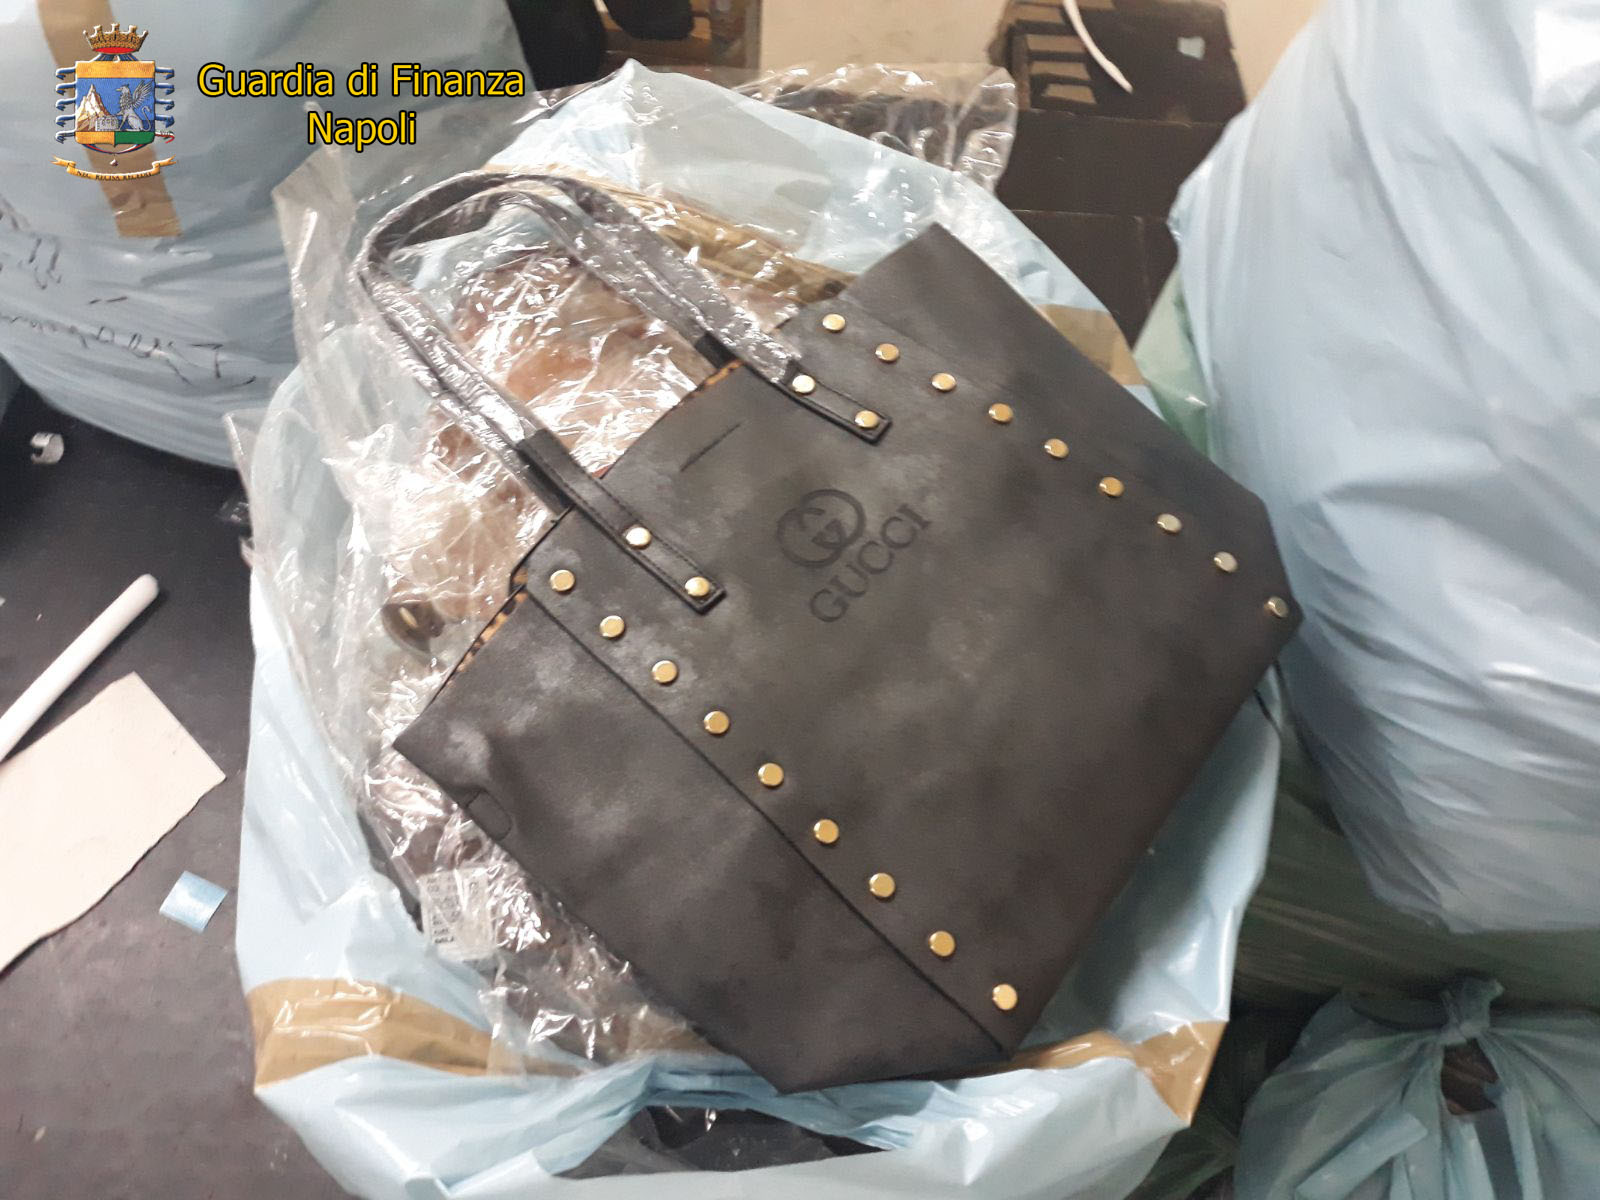  Napoli, fabbrica di borse contraffatte scoperta in via Bologna: denunciato il responsabile